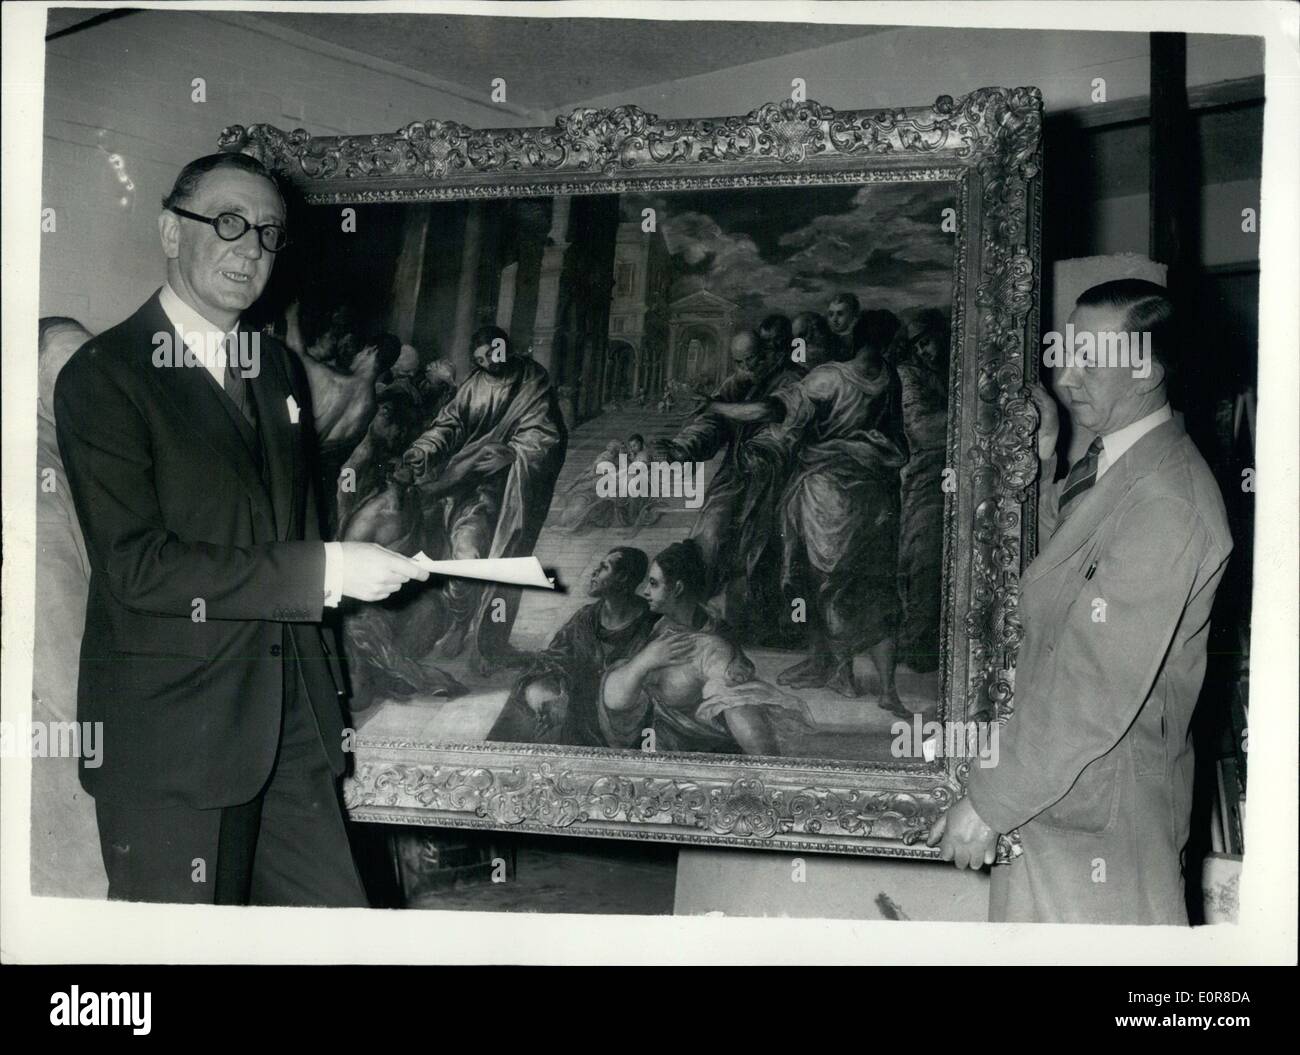 Agosto 08, 1958 - Pittura uno venduto per &pound;17 - Petches 36.000 Guinea credeva di essere un originale ''El Greco'': una sensazione è stata creata questa mattina a Christies quando ''Lotto 14'' fu venduto per 36.000 guideas. Il dipinto è descritto come ''Cristo la guarigione del cieco'' da P. Veromese - ed è stato venduto a Christies nel 1888 per 17 Guinea. Gli esperti sono convinti che il dipinto in un inizio di 17 Guinea. La foto mostra il sig. Jeoffrey Agrew dà un ultimo sguardo all'E1 Greco - dopo l'acquisto per 36.000 Guinea presso l'Autction diventare questa mattina. Foto Stock